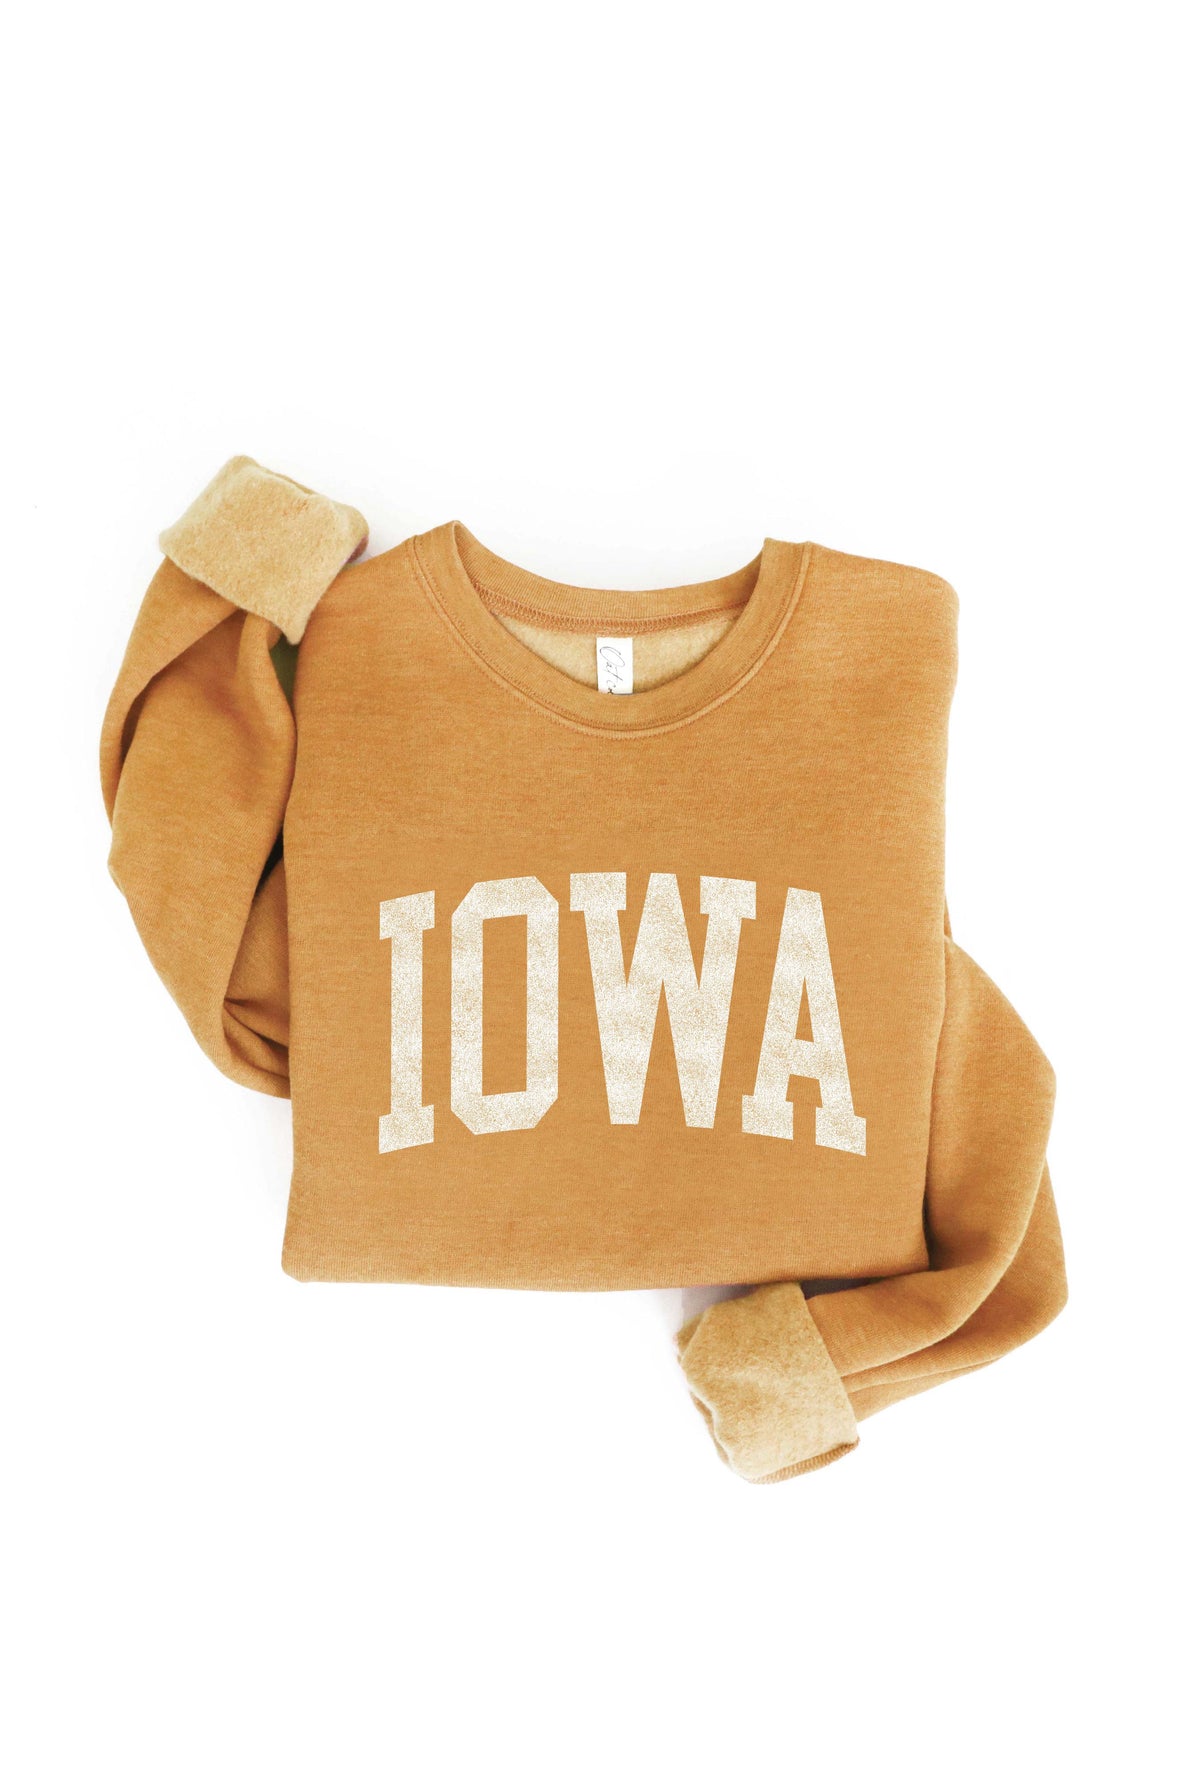 RESTOCK Plus Iowa Graphic Sweatshirt- (Mustard)